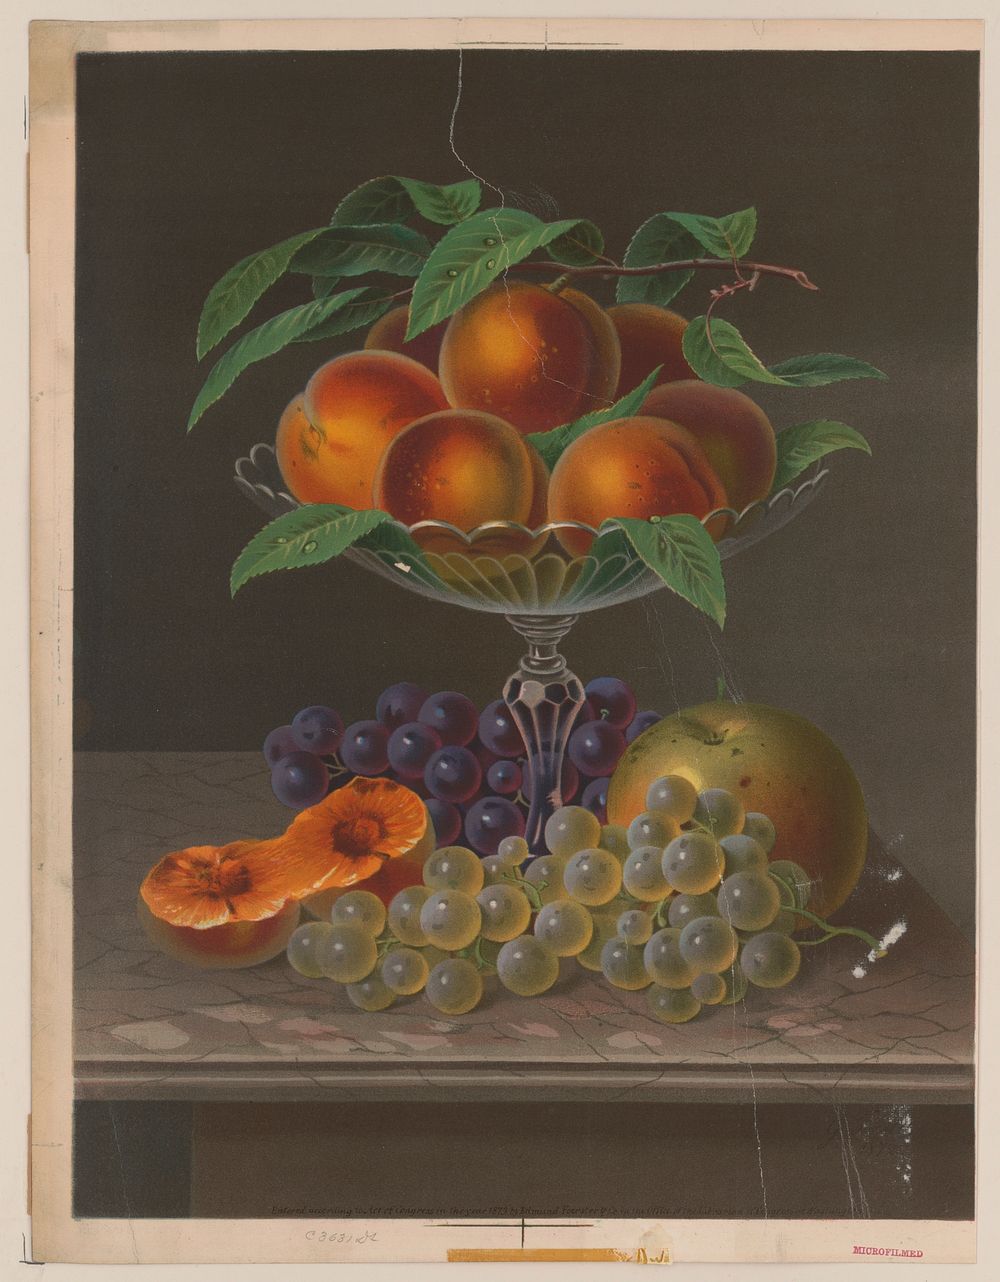 Fruit no. 1, Edmund Foerster & Co., publisher